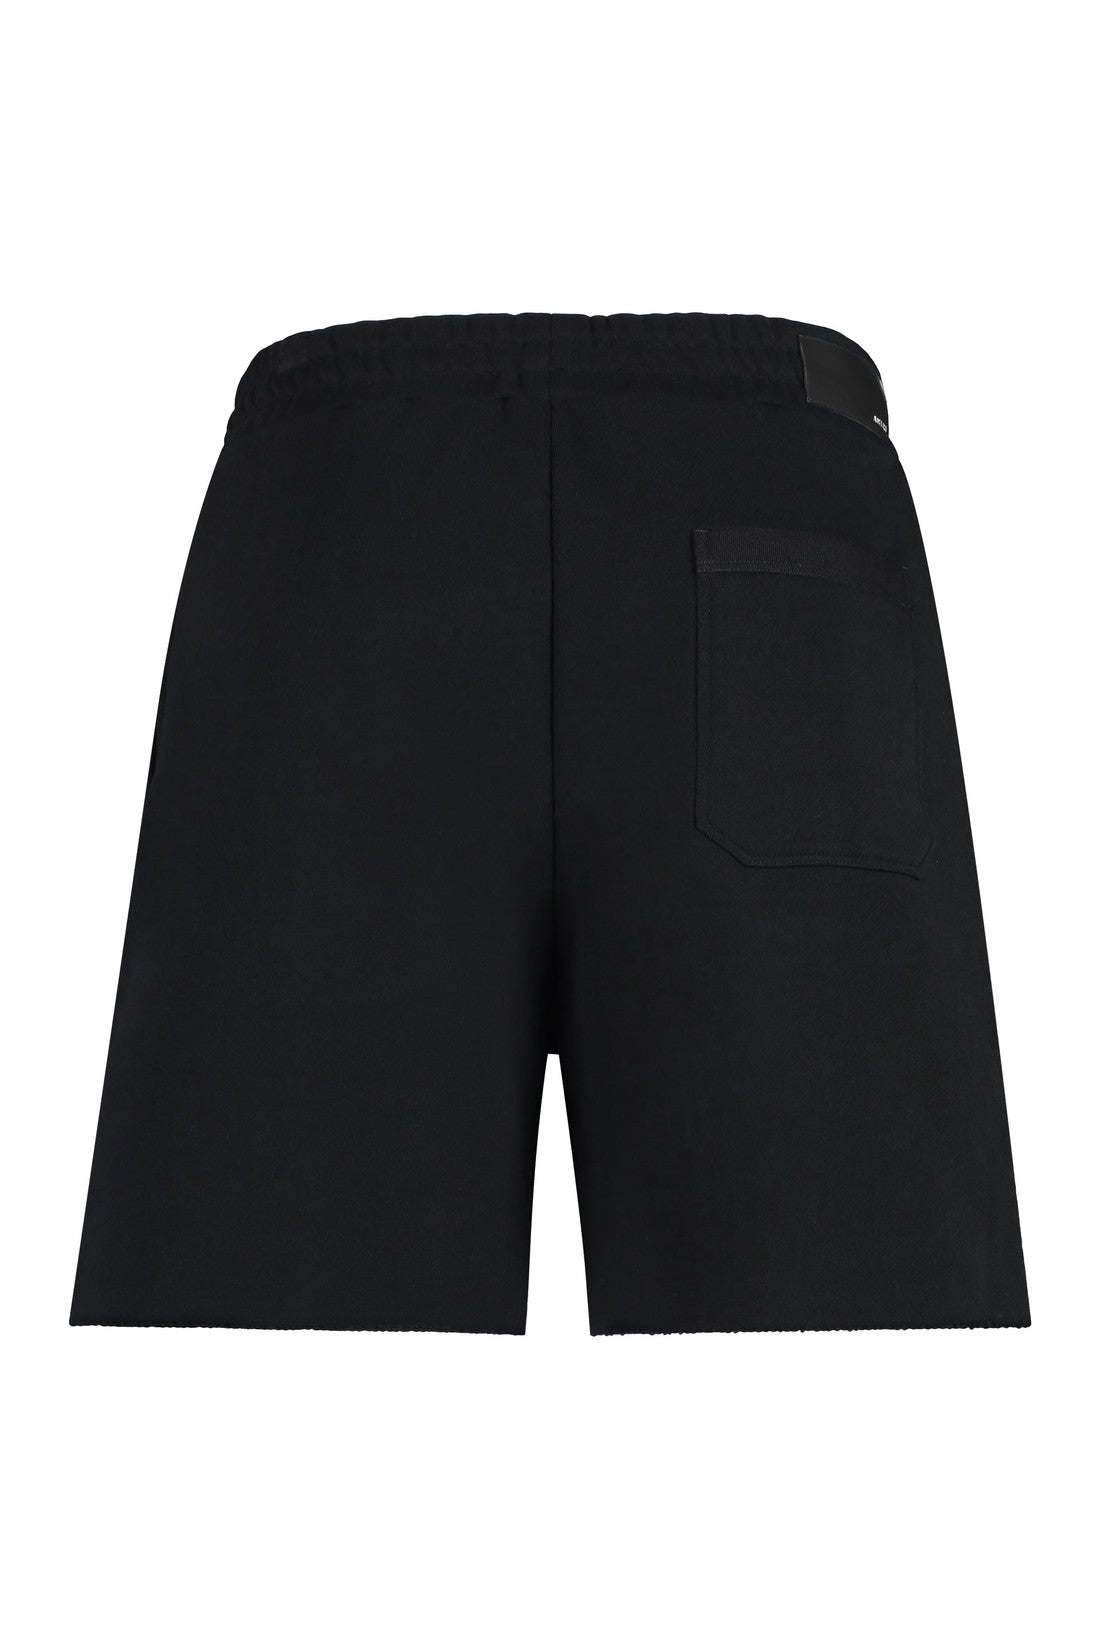 AMIRI-OUTLET-SALE-Cotton bermuda shorts-ARCHIVIST